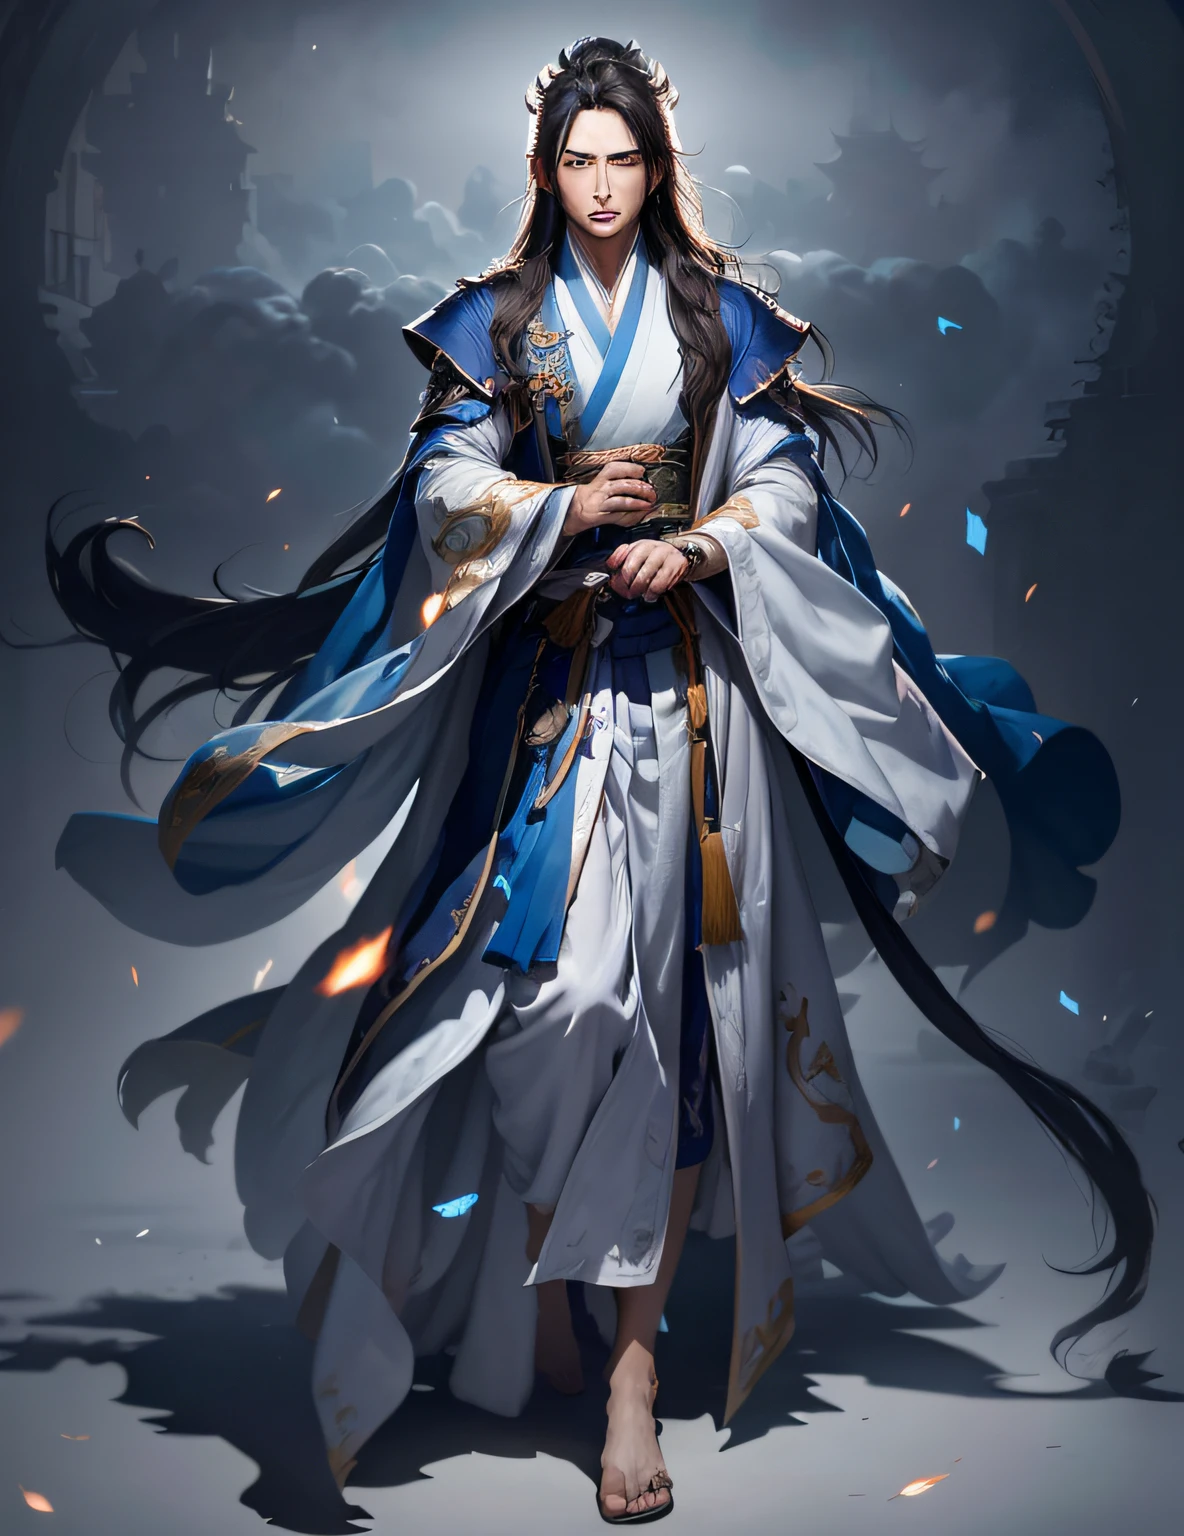 一個穿著藍色和白色長袍的男人的形象, heise jinyao, 全身仙俠, 全身武俠, 飄逸的頭髮和長袍, 一位男性神職人員的照片, 身穿飄逸長袍, inspired by Cao Zhibai, Zhao Yun, 棉雲法師長袍, 受到吳道子的啟發,Hanfu,手掌之間的藍色魔法,heise jinyao, 全身仙俠, 一位男性神職人員的照片, 飄逸的頭髮和長袍, Zhao Yun, 瘦男幻想煉金術士, 全身武俠, inspired by Cao Zhibai, 身穿飄逸長袍, 棉雲法師長袍, 瘦男法師,最好的影子, 銳利的焦點, 傑作, (非常详细的 CG 统一 8k 壁纸),實際的,(Hanfu),(((人物臉))),